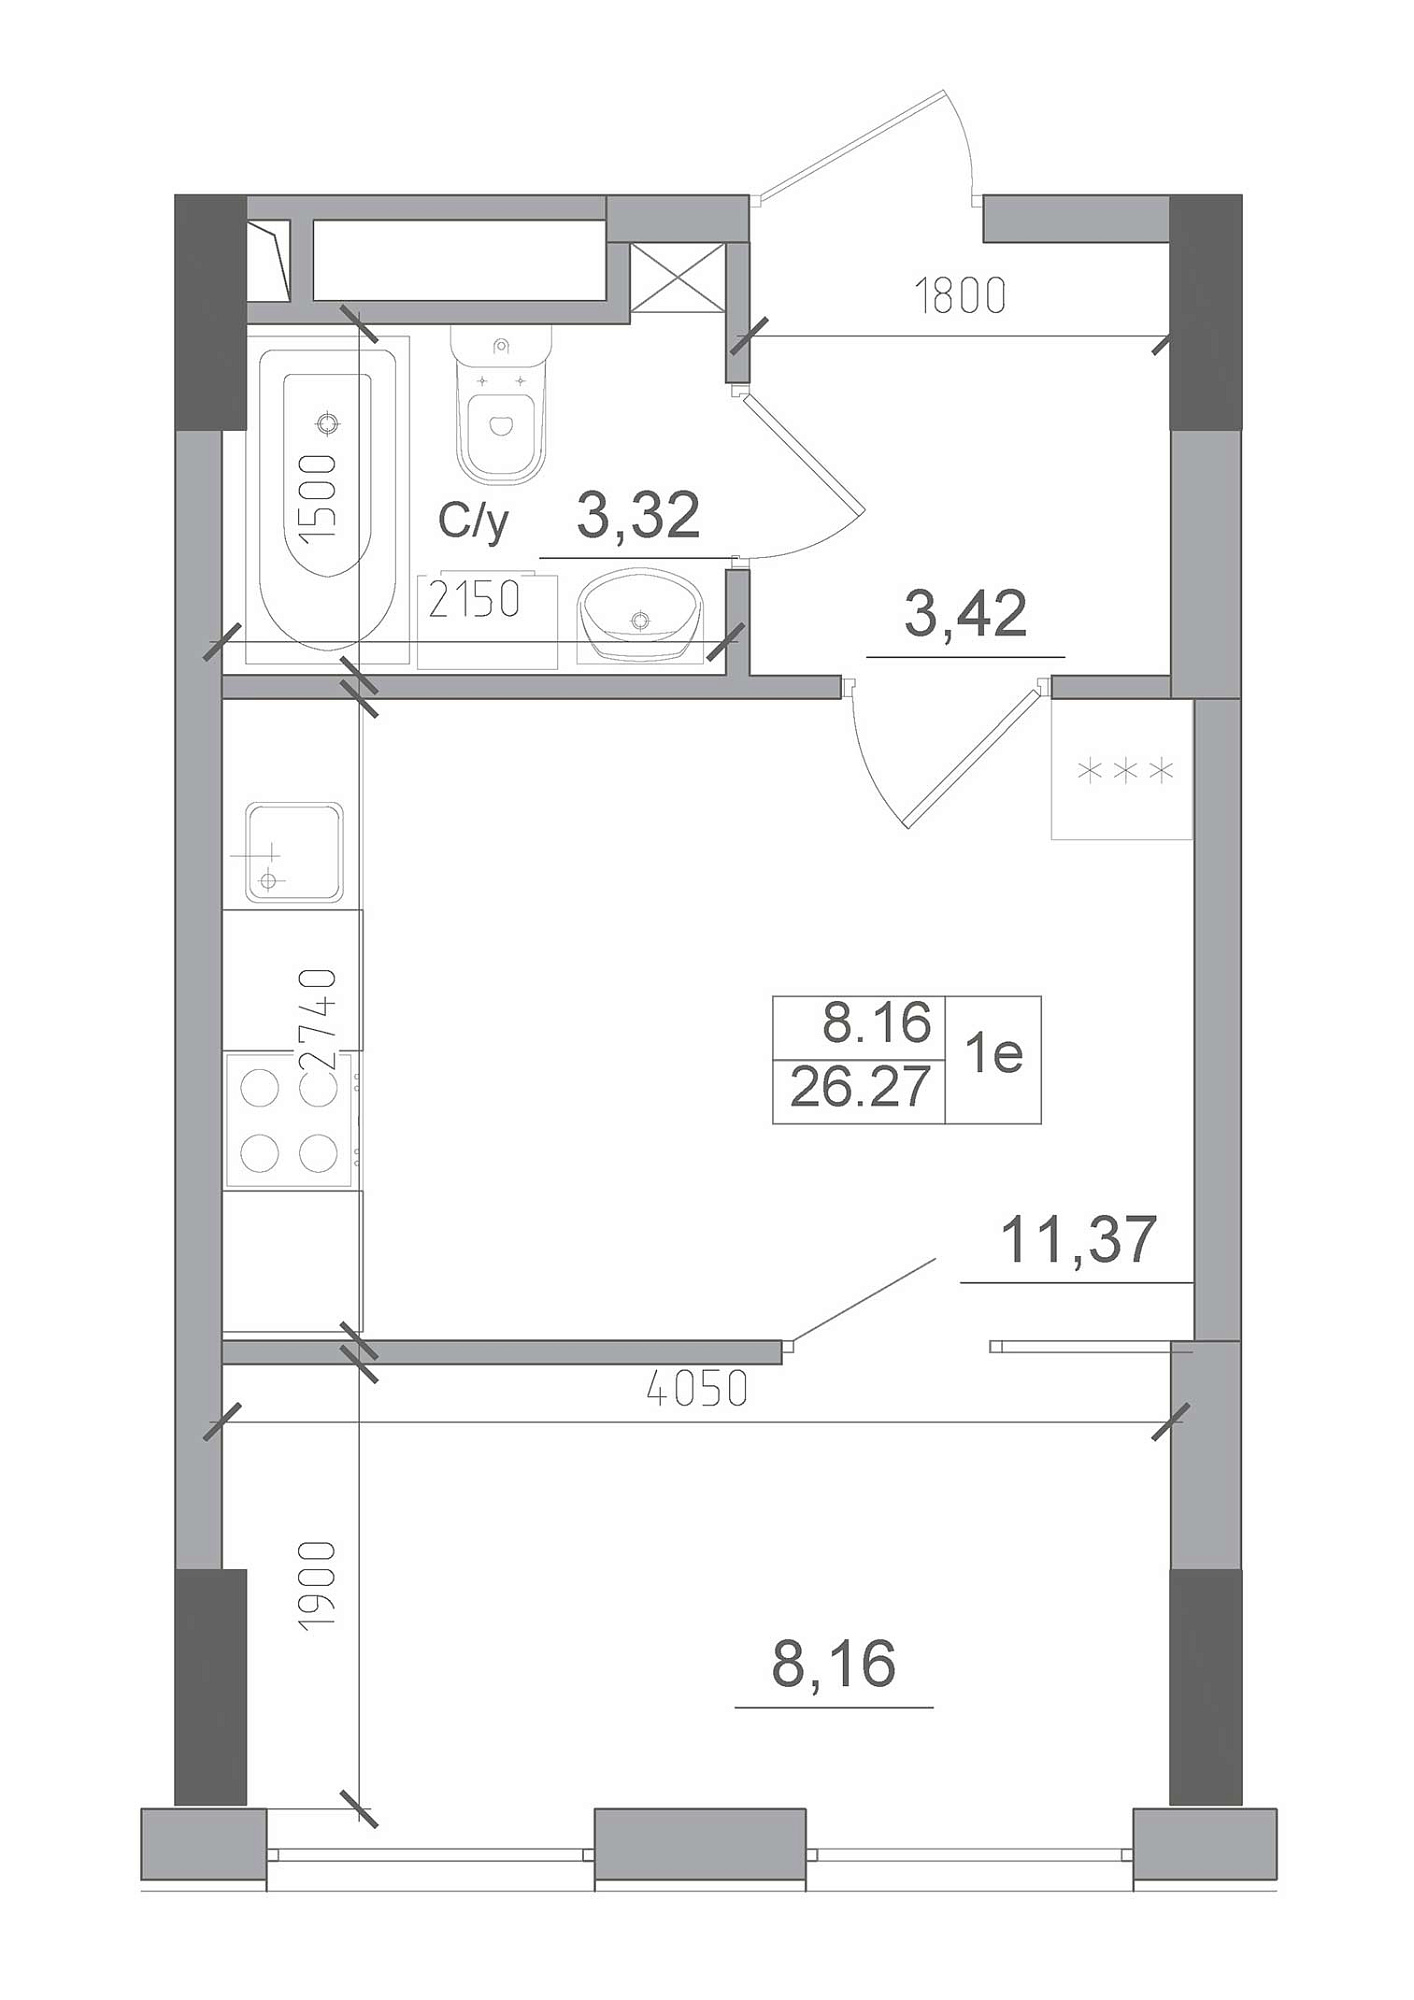 Планировка 1-к квартира площей 26.27м2, AB-22-05/00009.